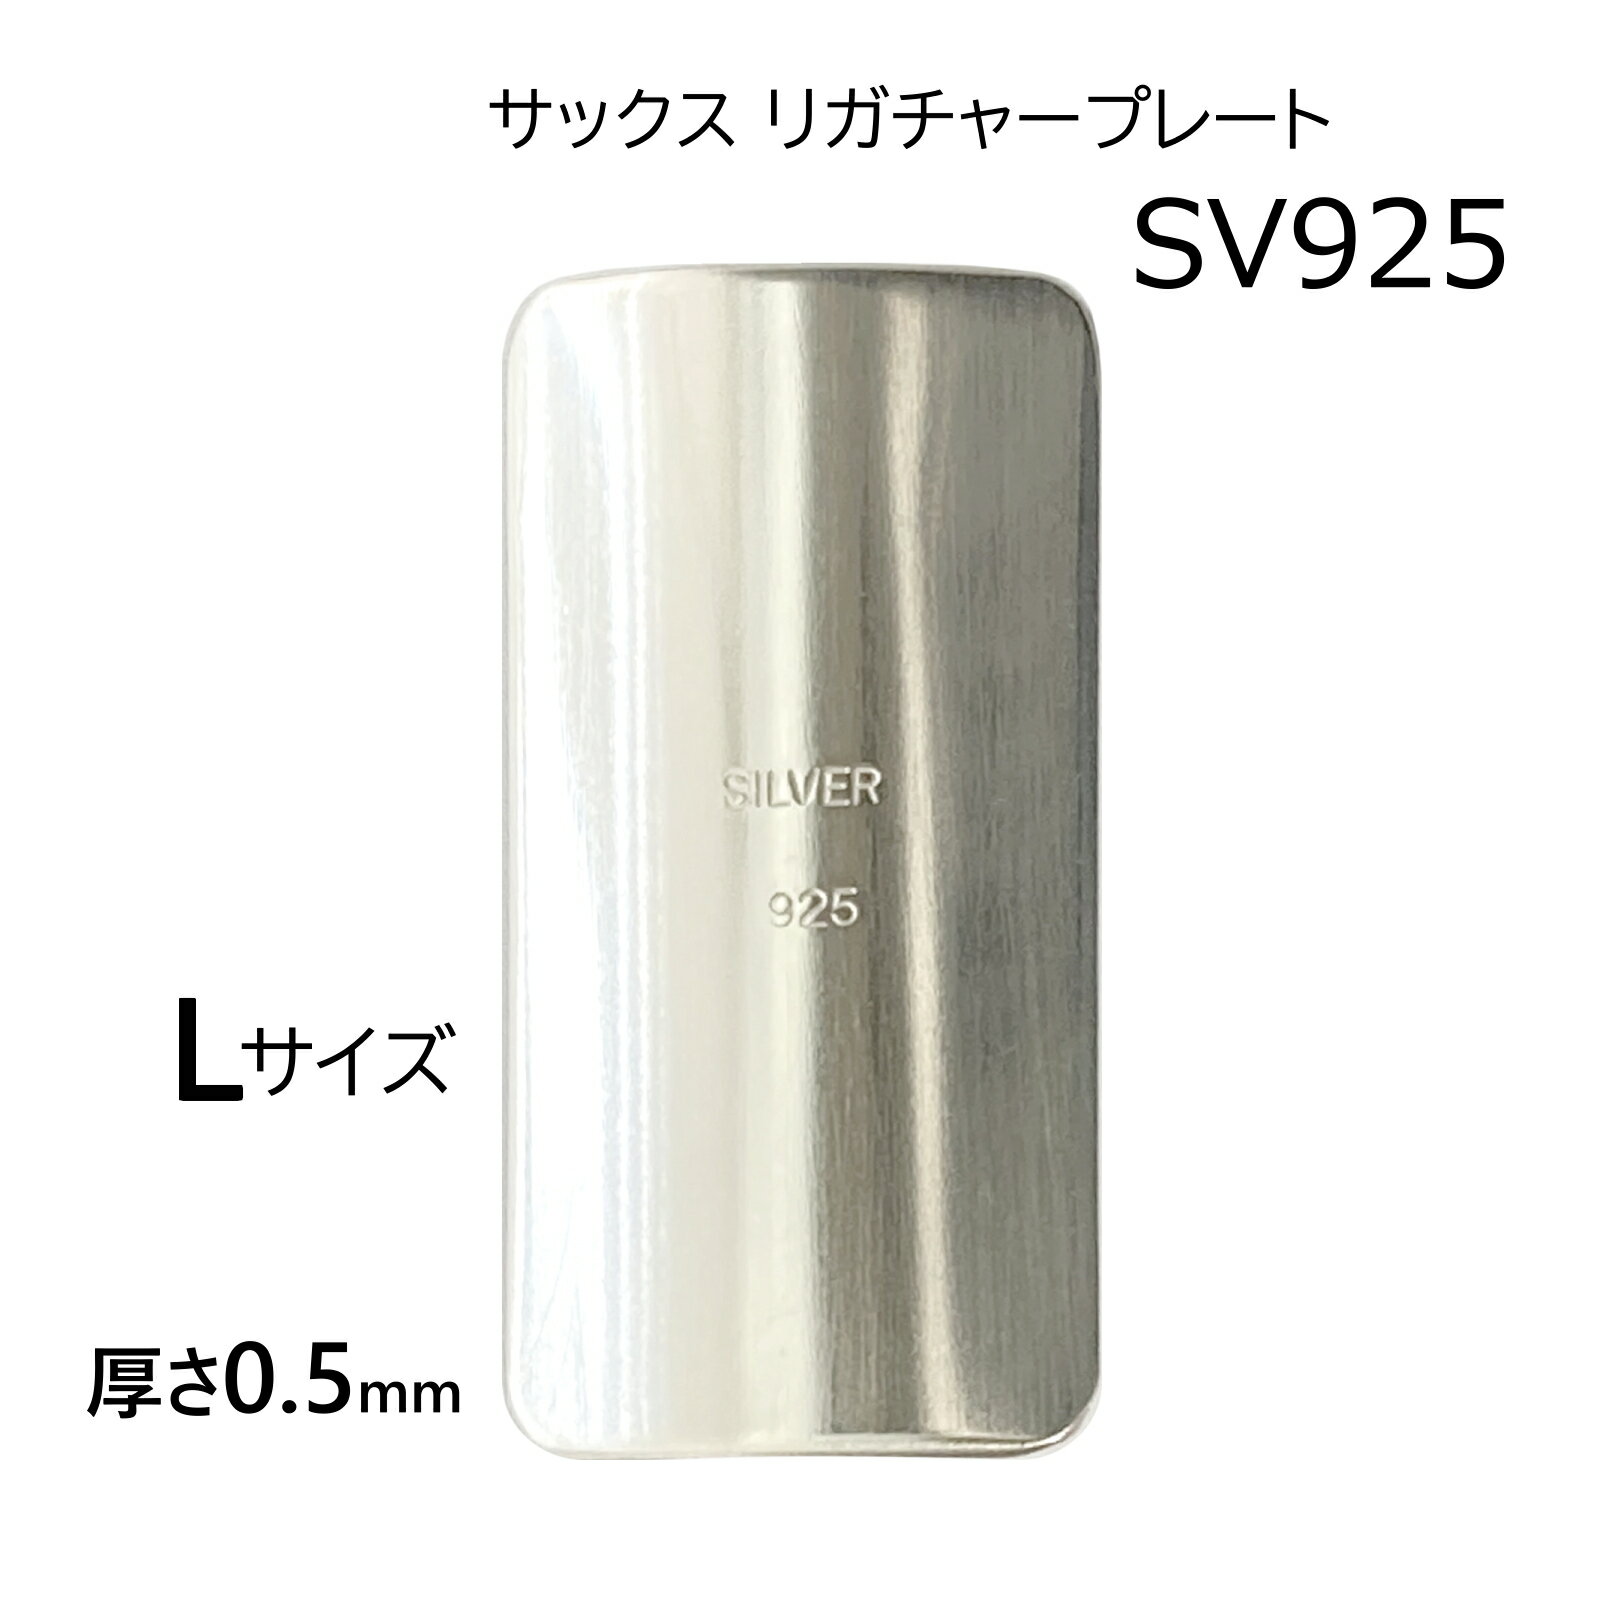 シルバー SV925 厚0.5mm リガチャープレート 刻印入 日本製